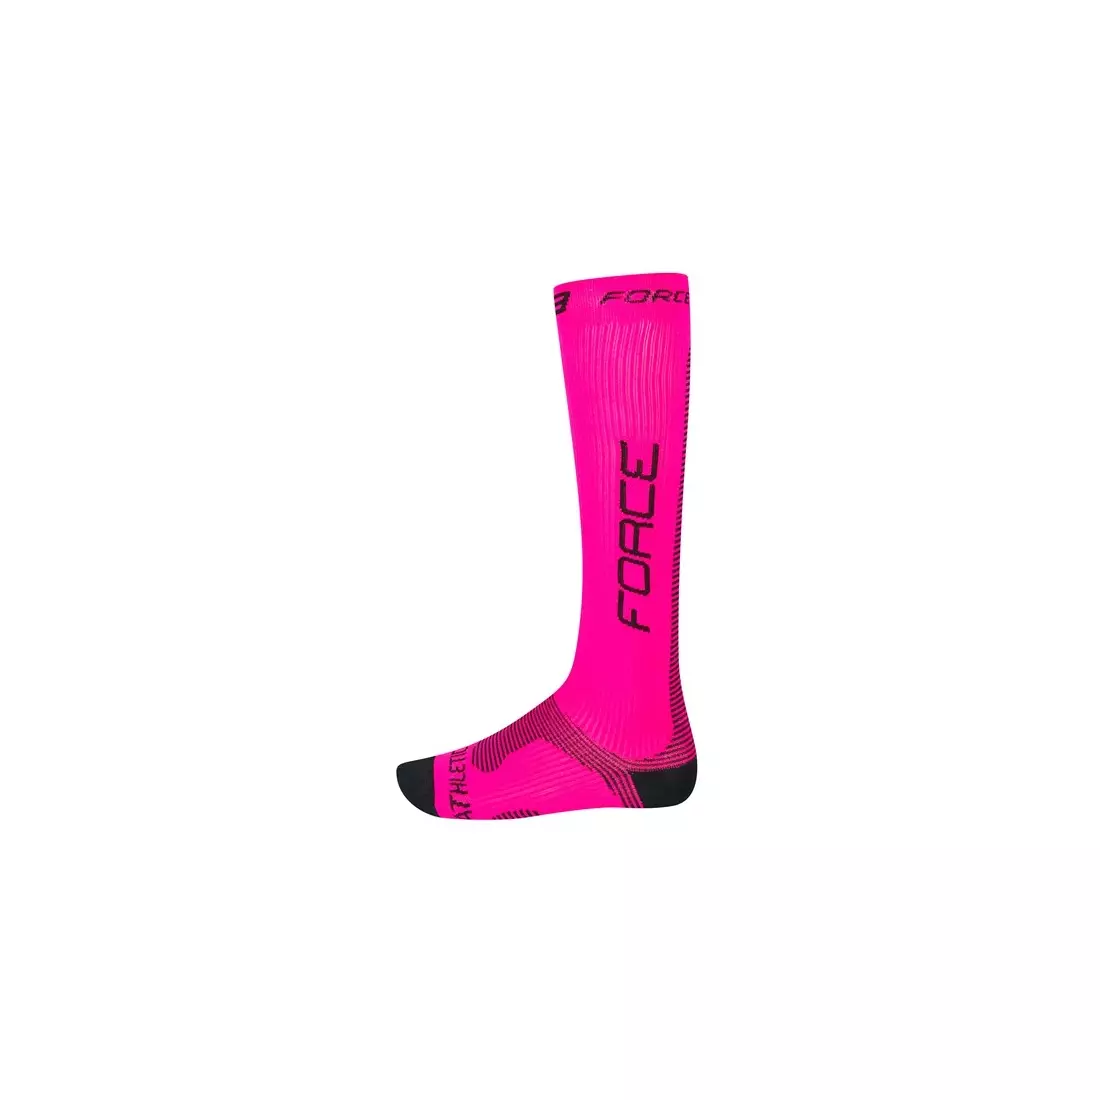 FORCE compression socks PRO 90105, color: Pink